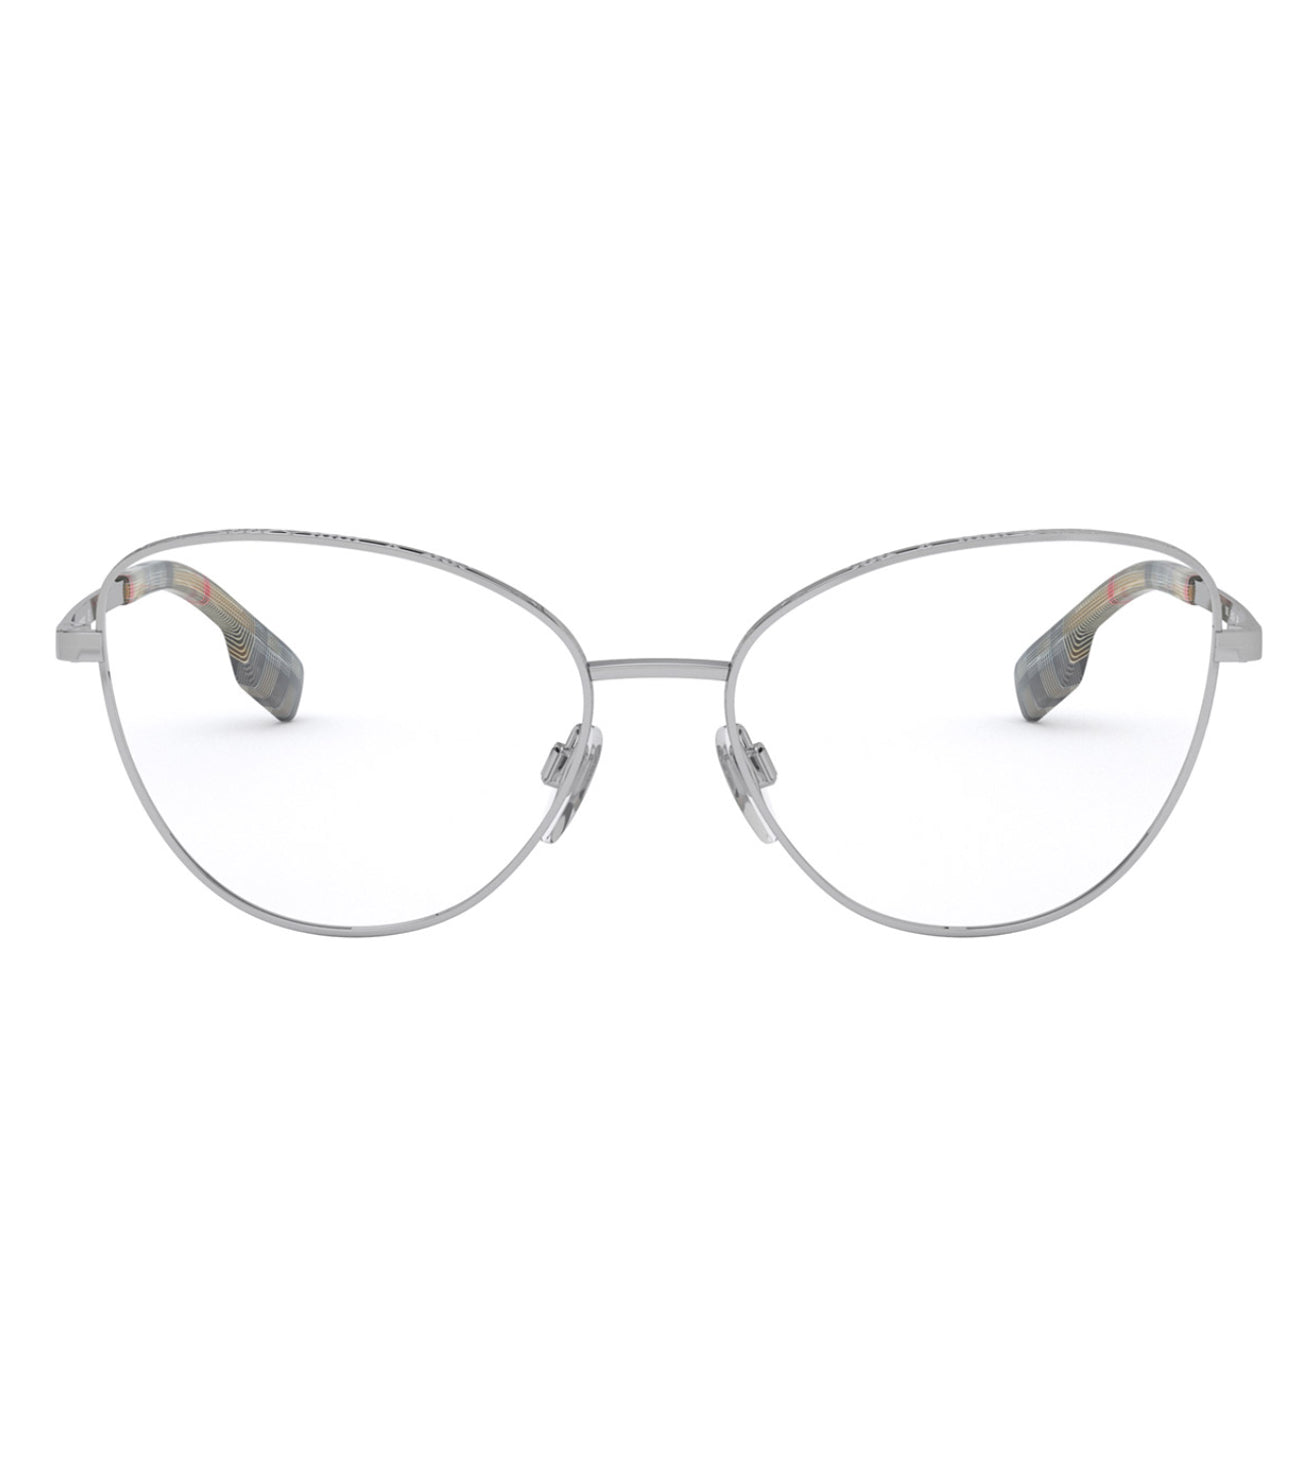 Burberry Women's Silver Cat-eye Optical Frames